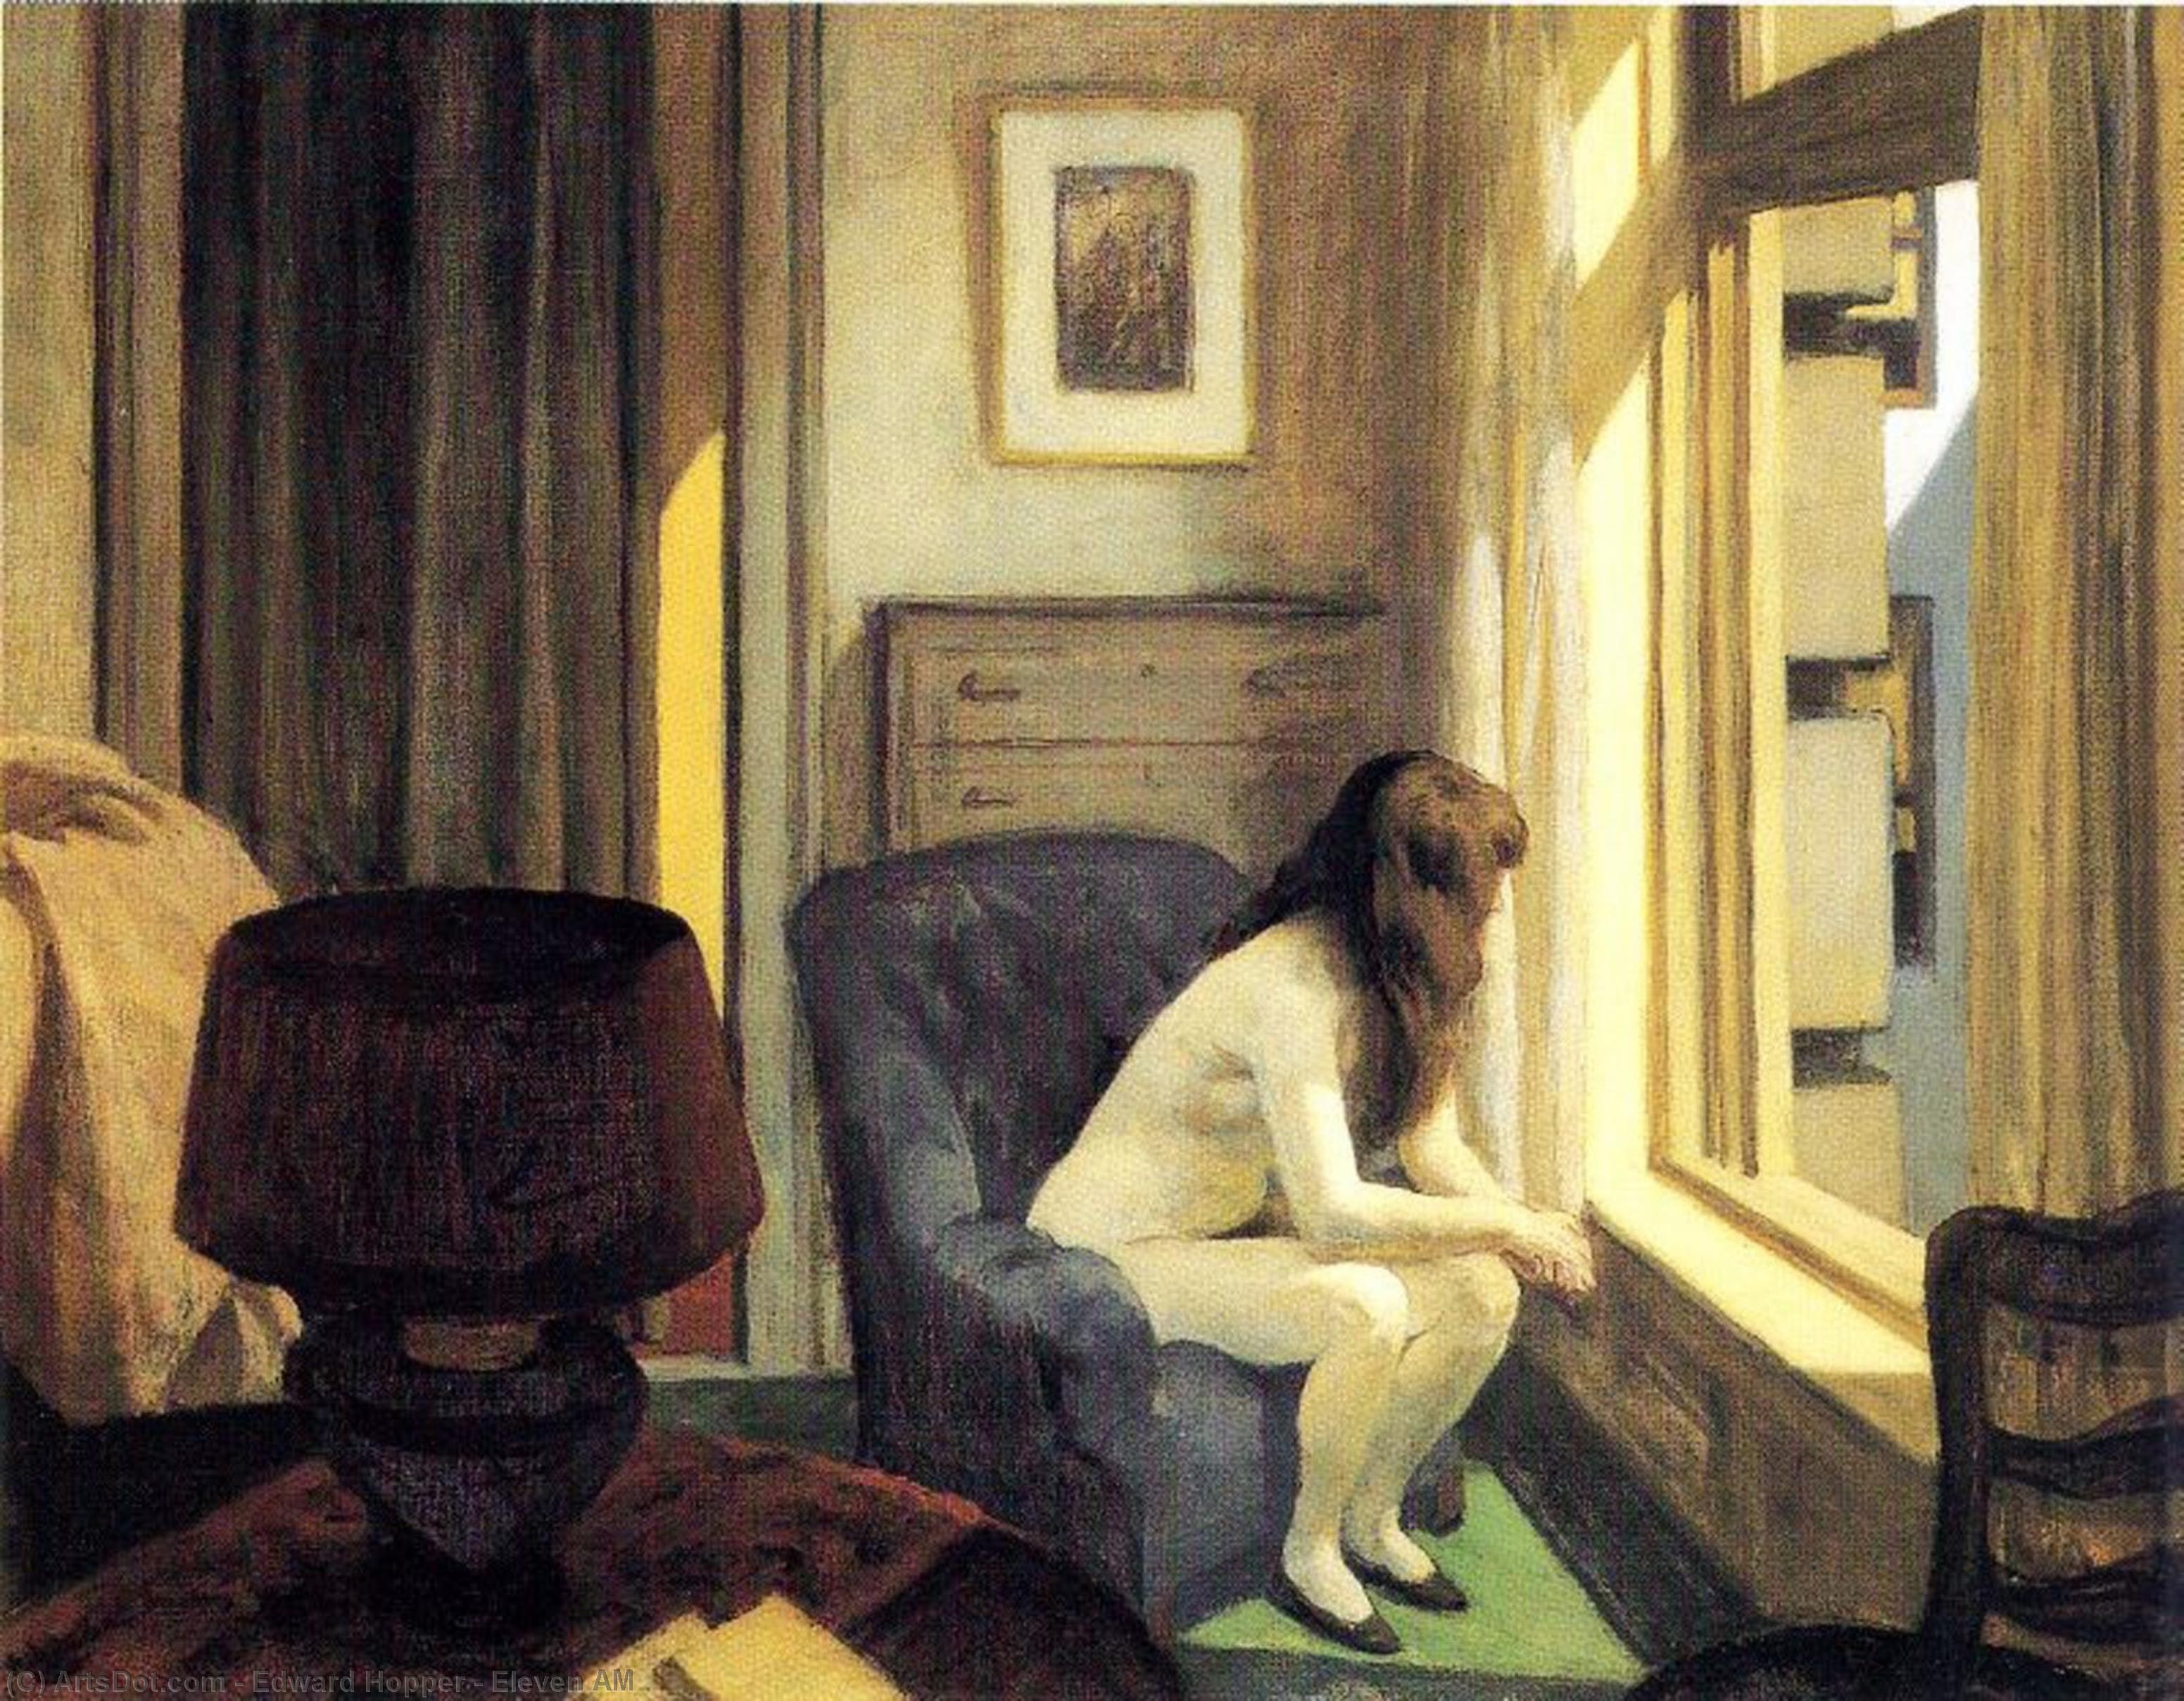 Achat Réplique De Peinture Onze heures, 1926 de Edward Hopper (Inspiré par) (1931-1967, United States) | ArtsDot.com